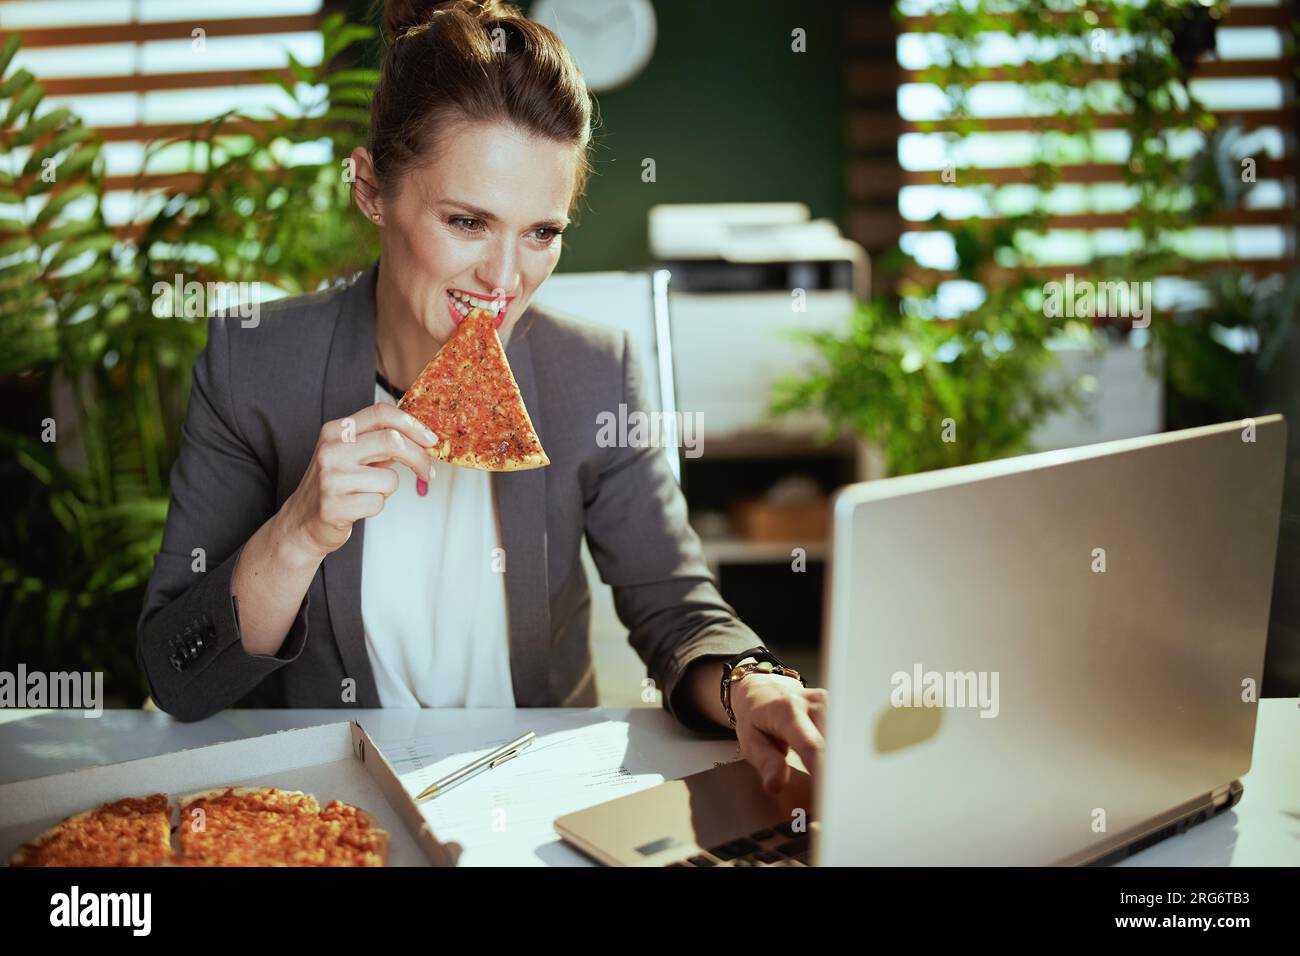 Lieu de travail durable. femme travailleuse moderne dans un costume d'affaires gris dans le bureau vert moderne avec pizza et ordinateur portable. Banque D'Images